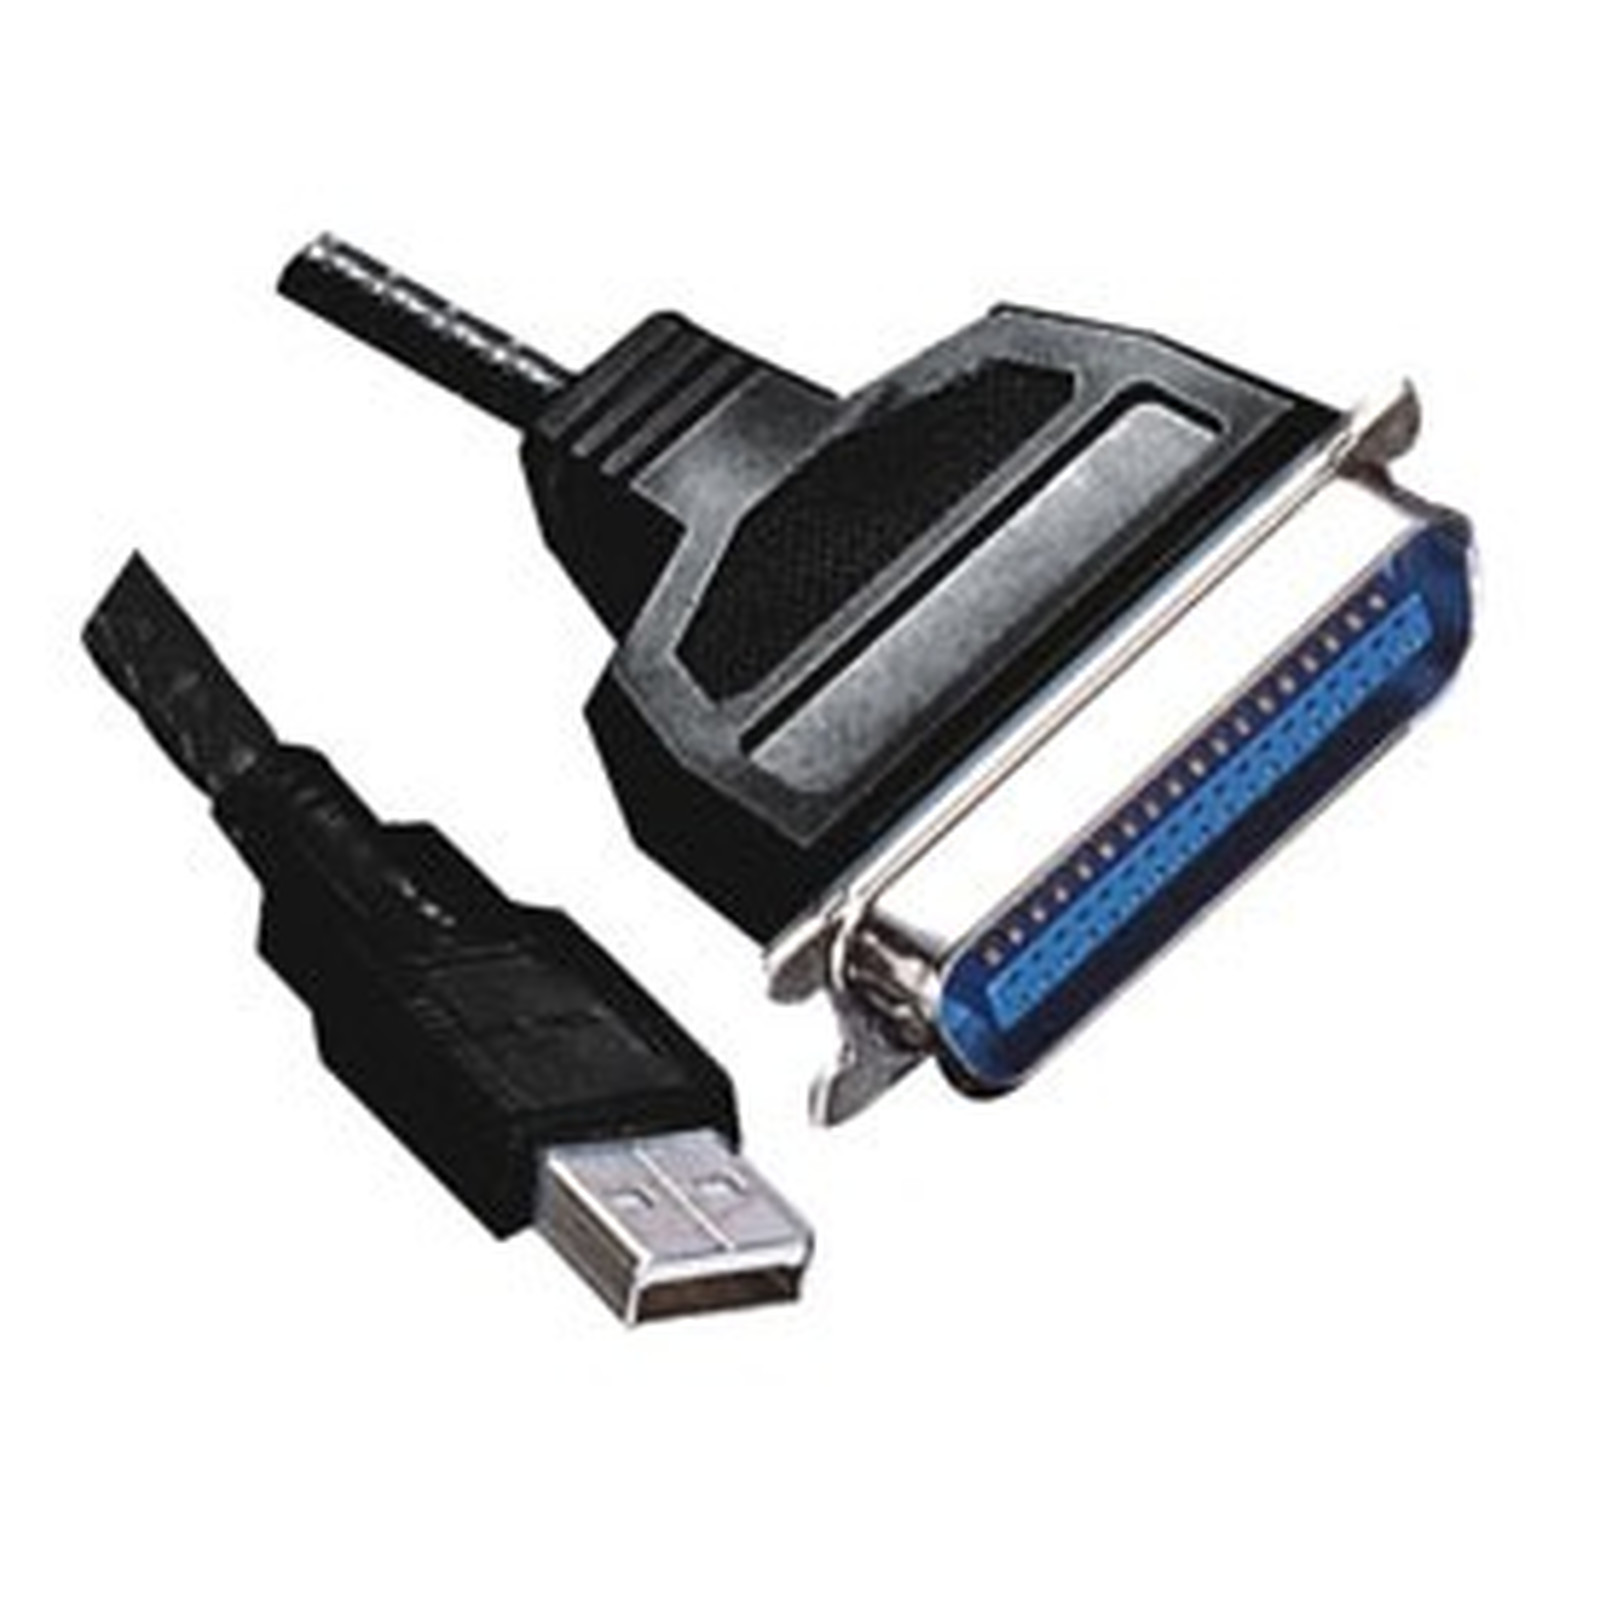 Cable USB pour imprimante Parallèle (Centronics C36) - USB Generique